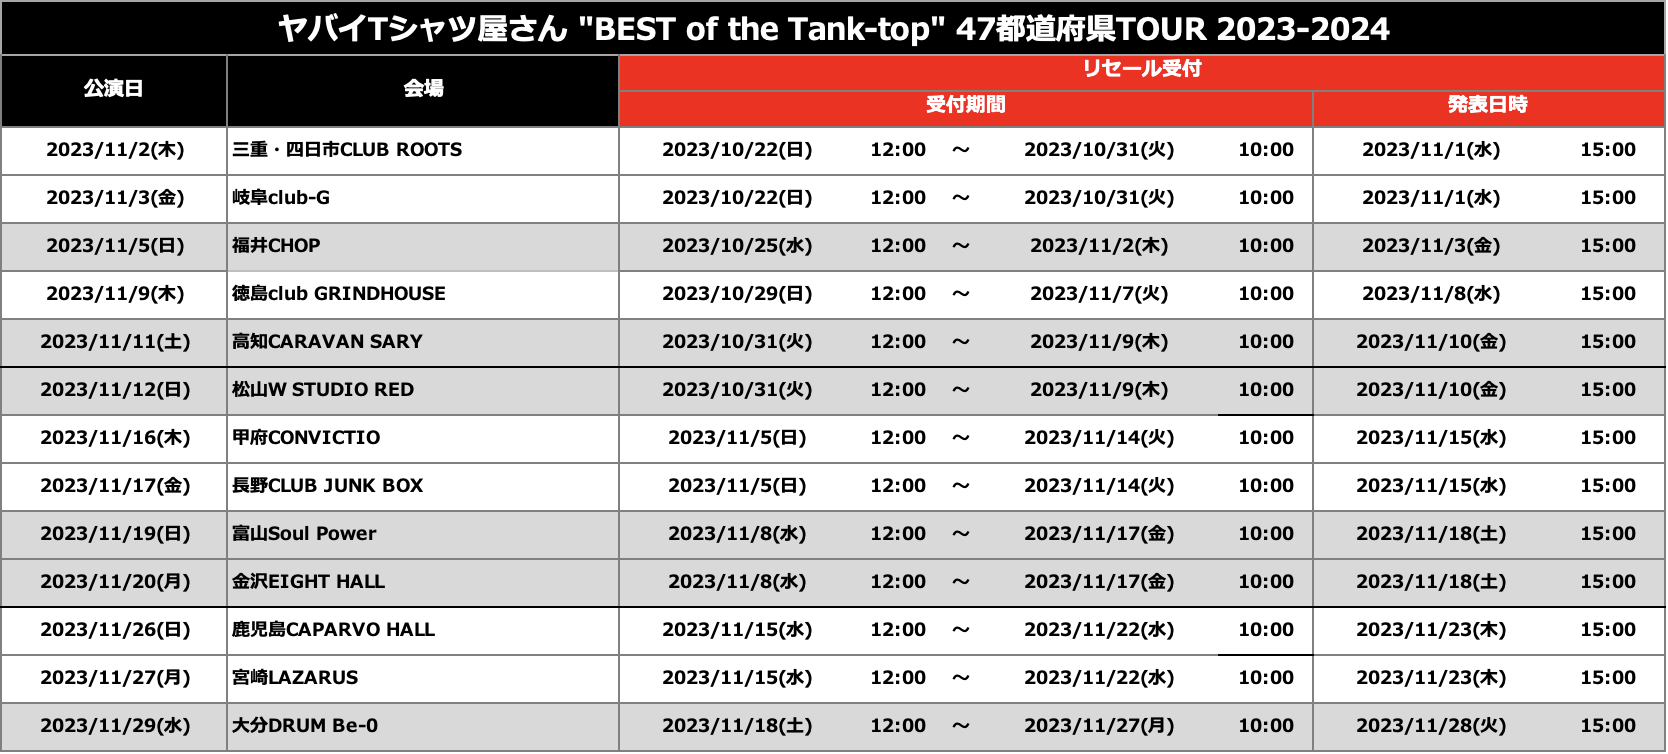 ヤバイTシャツ屋さん “BEST of the Tank-top” 47都道府県TOUR 2023